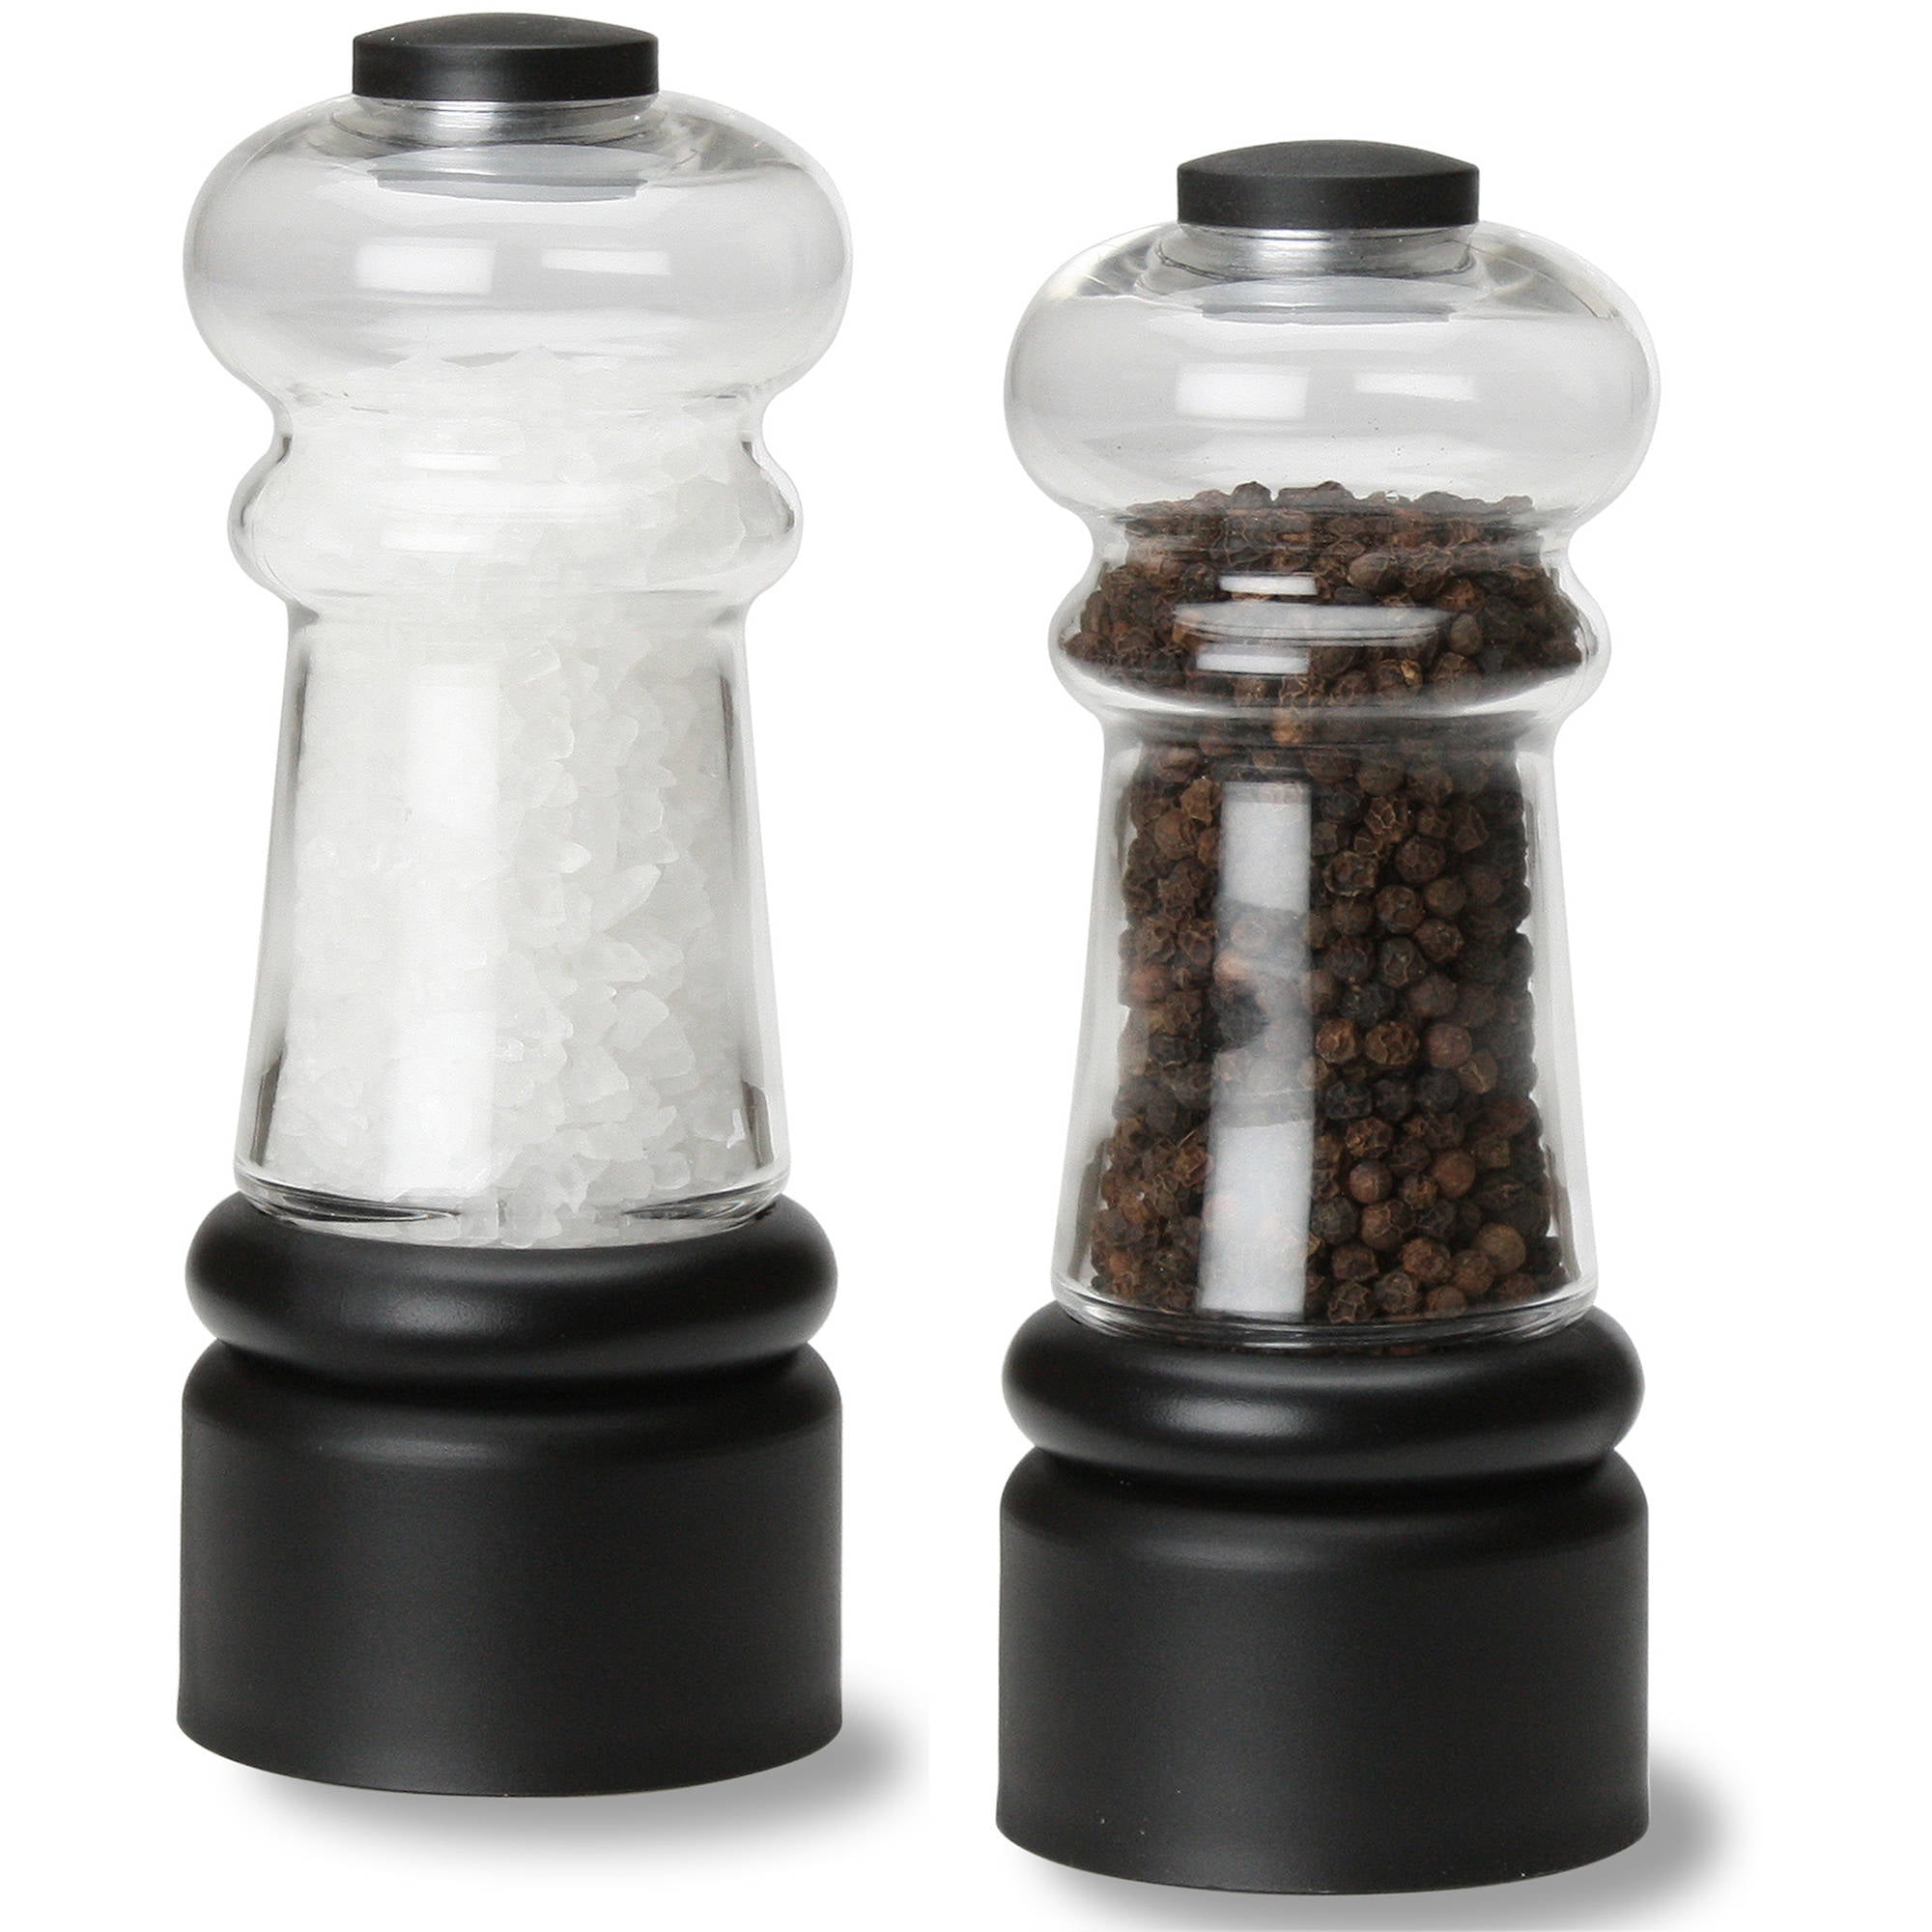 Salt & Pepper Mills | Buy Salt & Pepper Grinders Online, Large